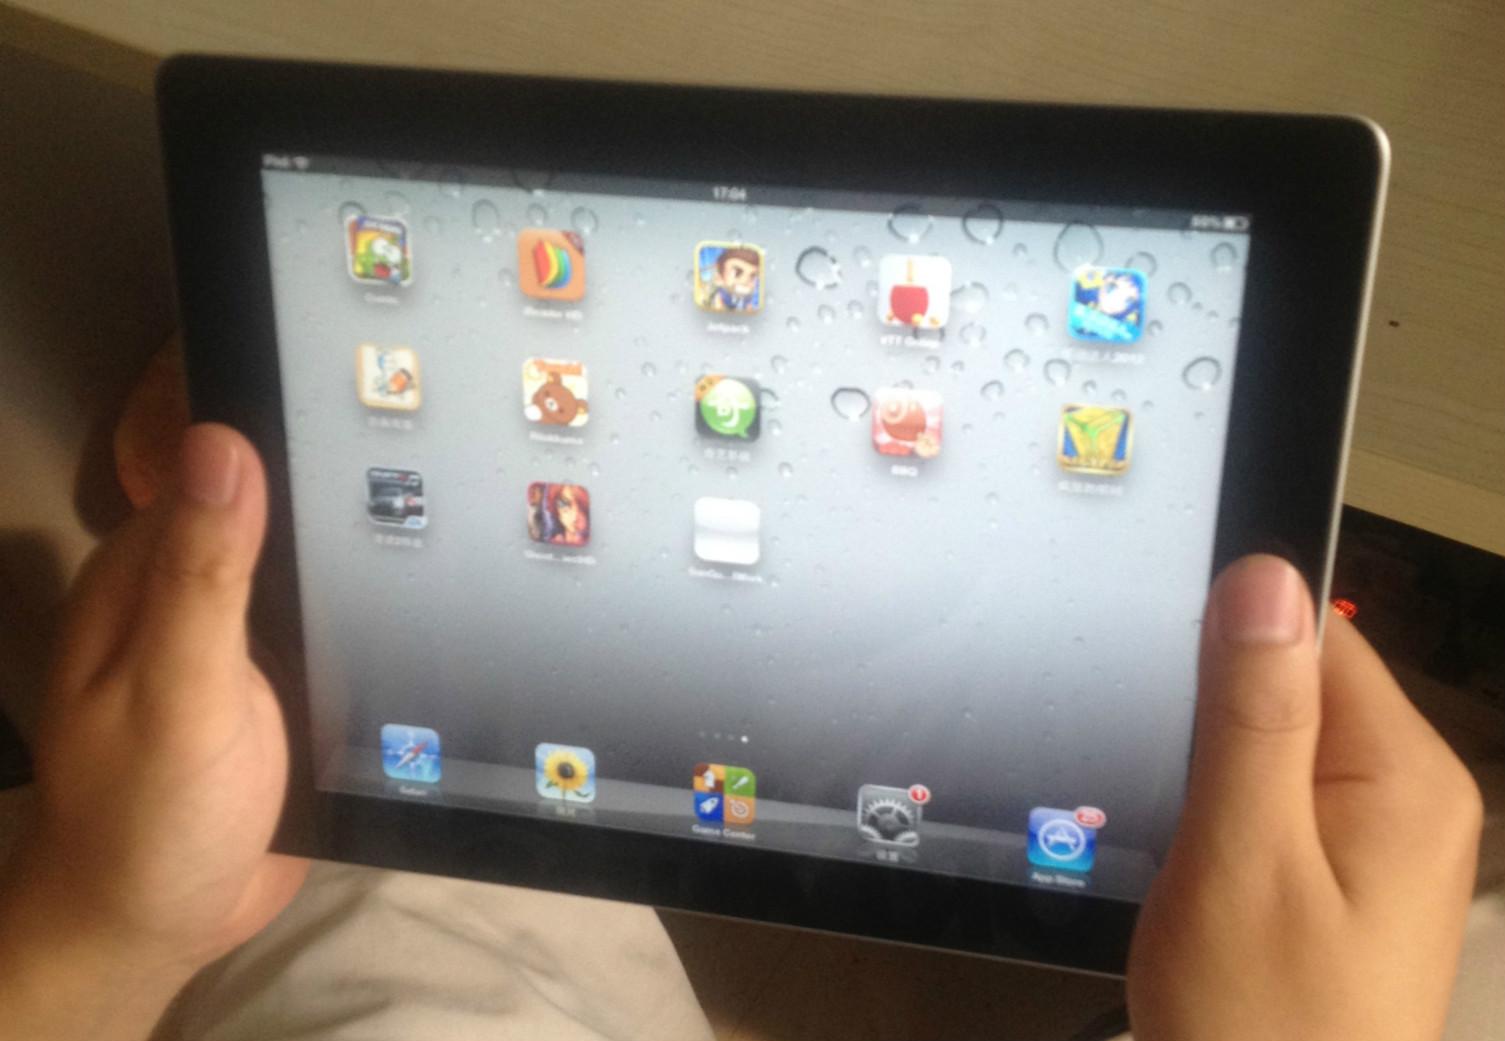 为什么 iPad 的 home 键设计在竖屏模式的底部